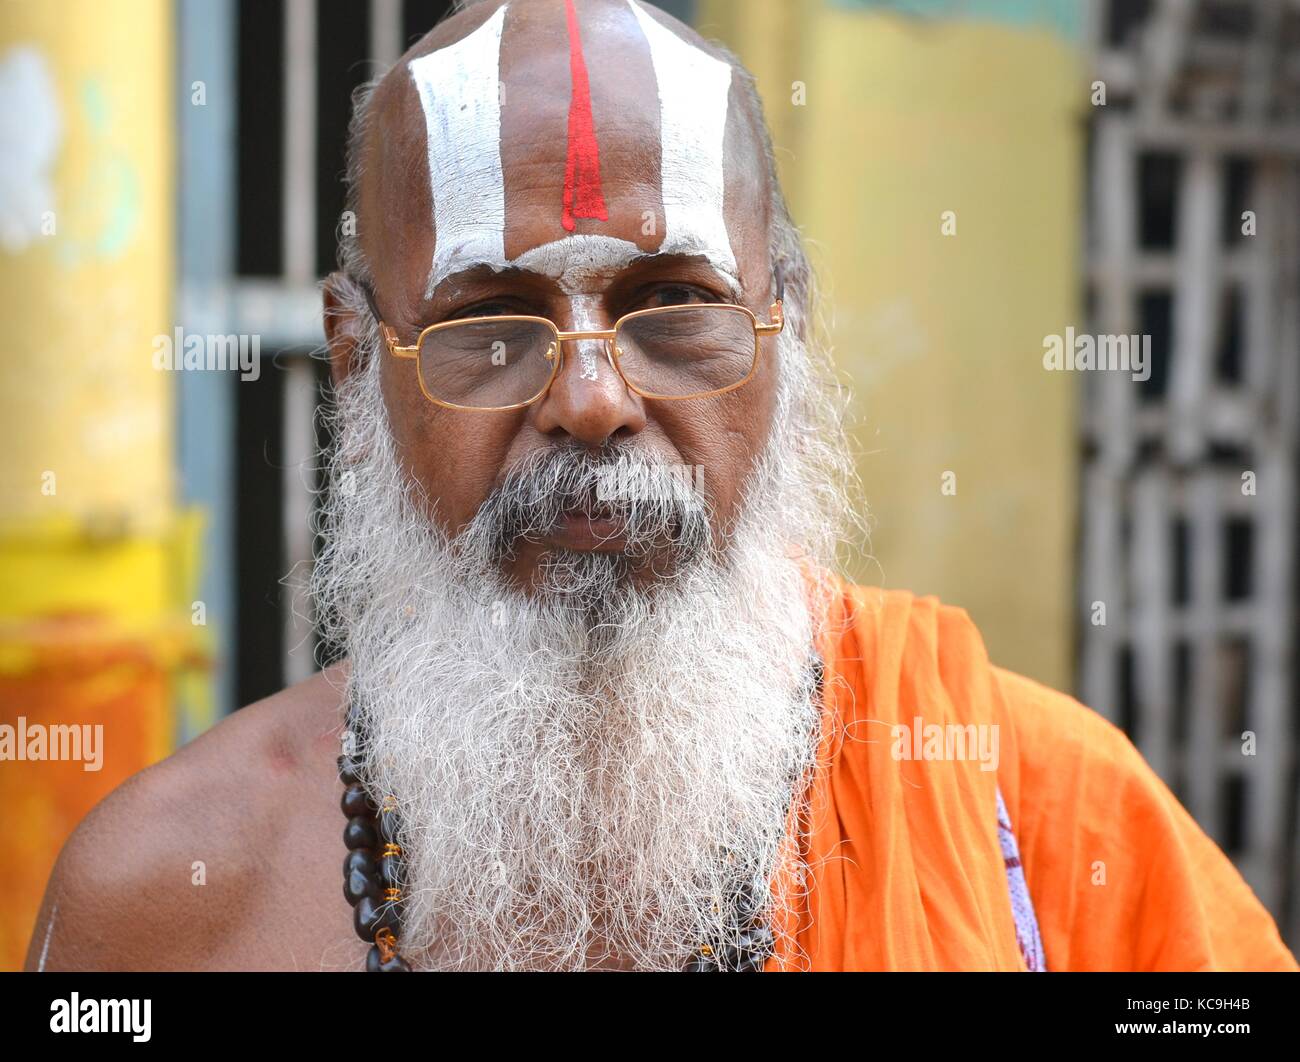 Der alte Vaishnavite Brahmin (hinduistischer Priester, der Vishnu anbetet) mit langem weißem Bart und kunstvollem Urdhva-Pundra auf der Stirn in einem orangefarbenen Bademantel Stockfoto